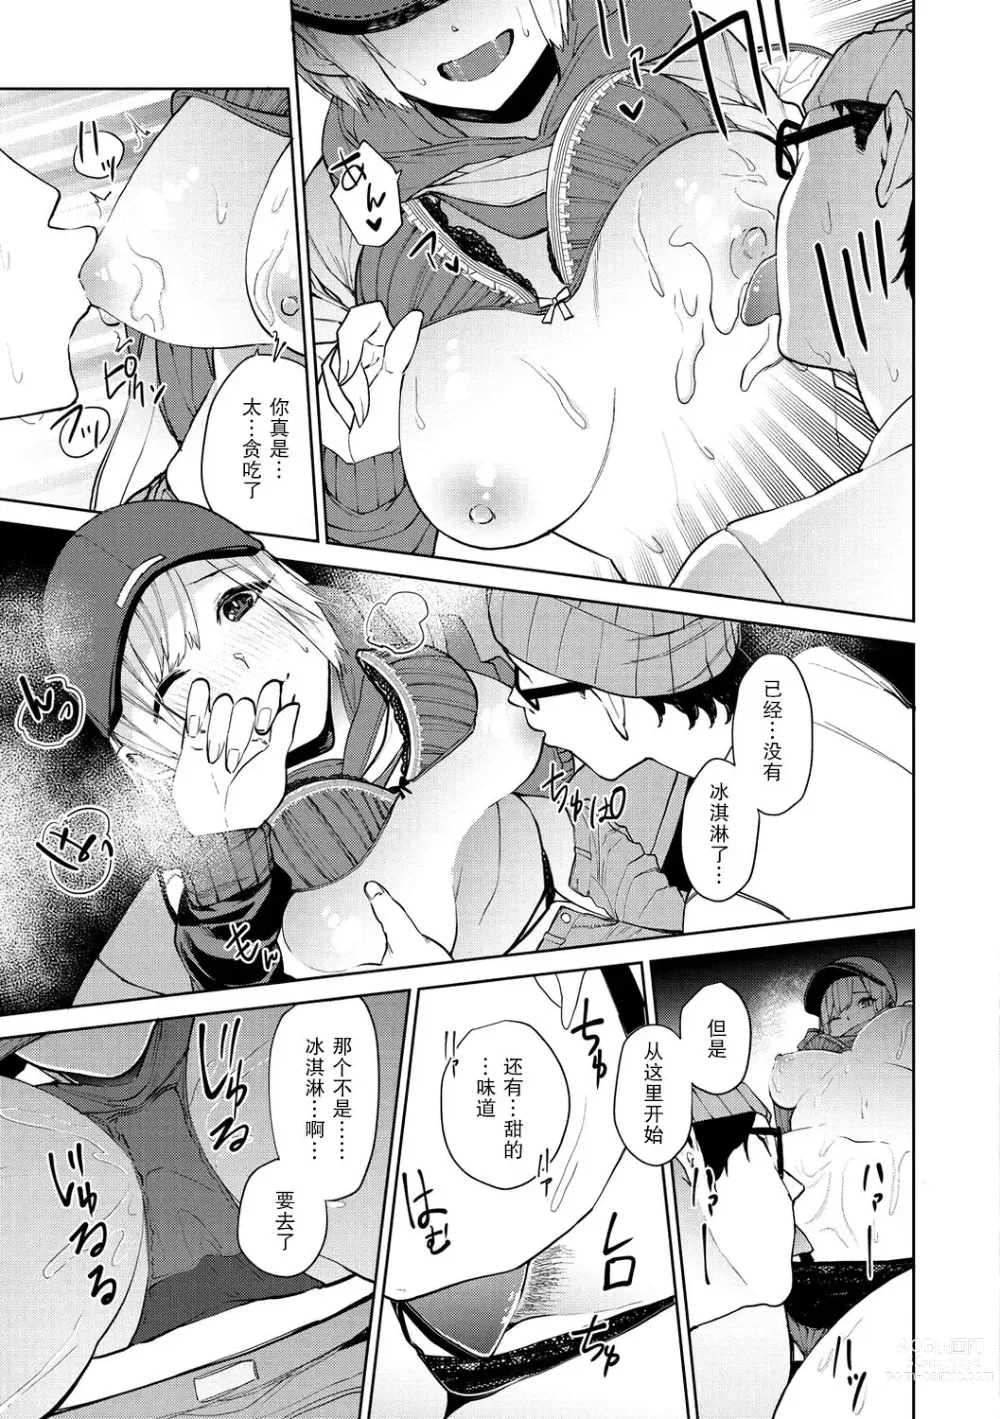 Page 12 of manga 96 - kuro - Black